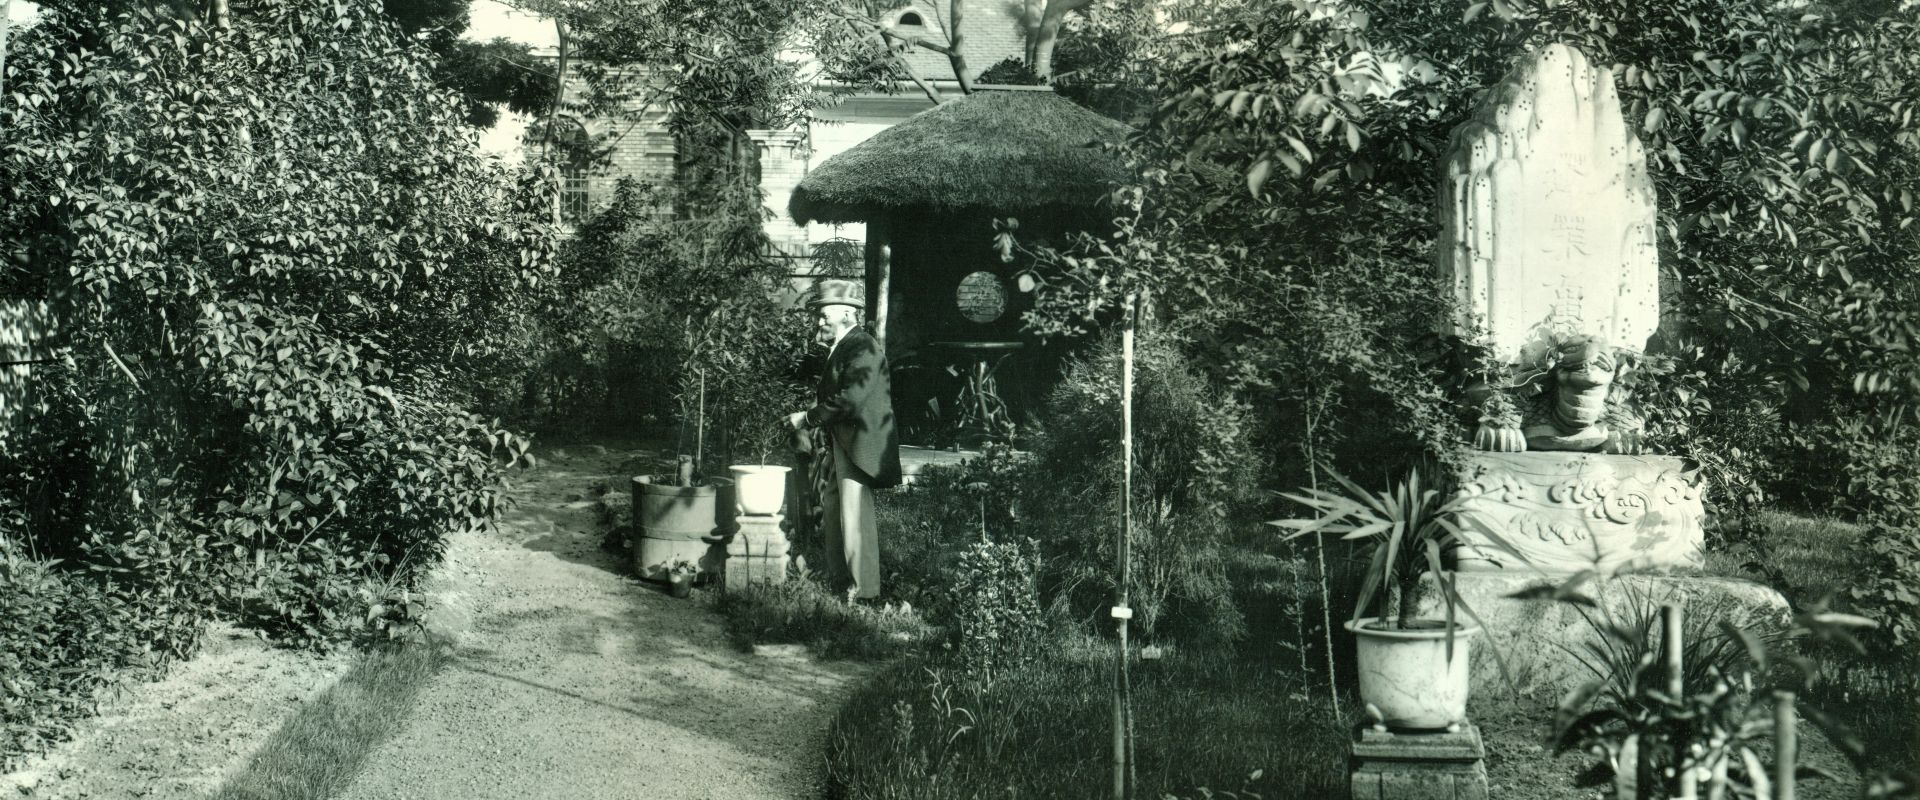 „A képzelet tere” – Teakertek teaszobák
Vezetett séta a Tea útján a Hopp-kertből a Hopp-villába